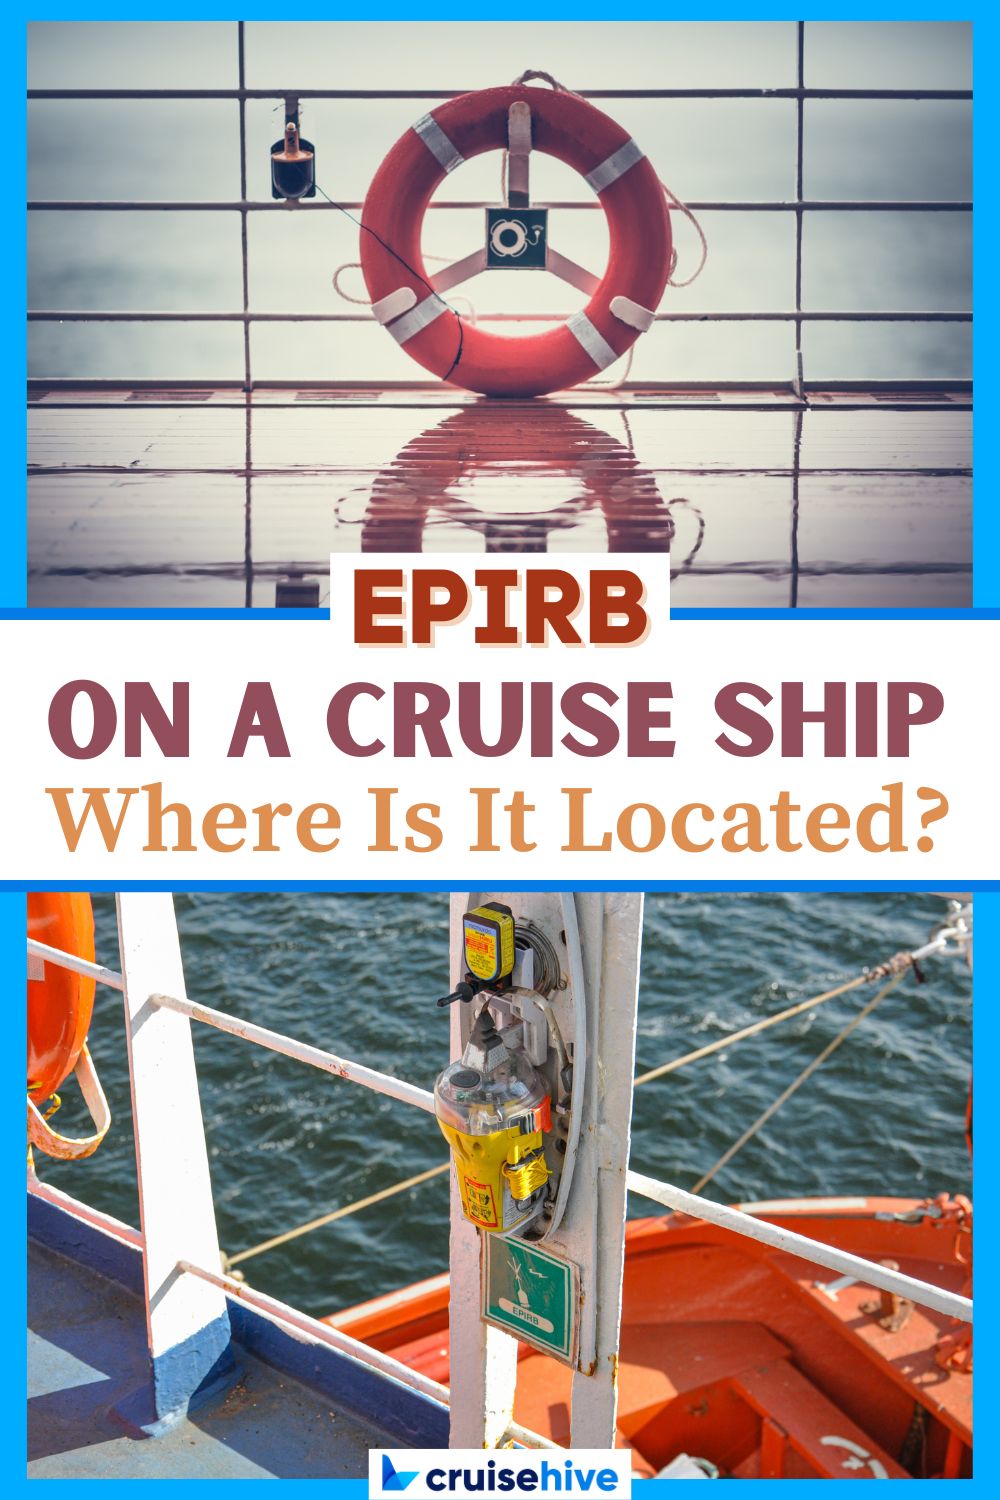 EPIRB on Cruise Ship